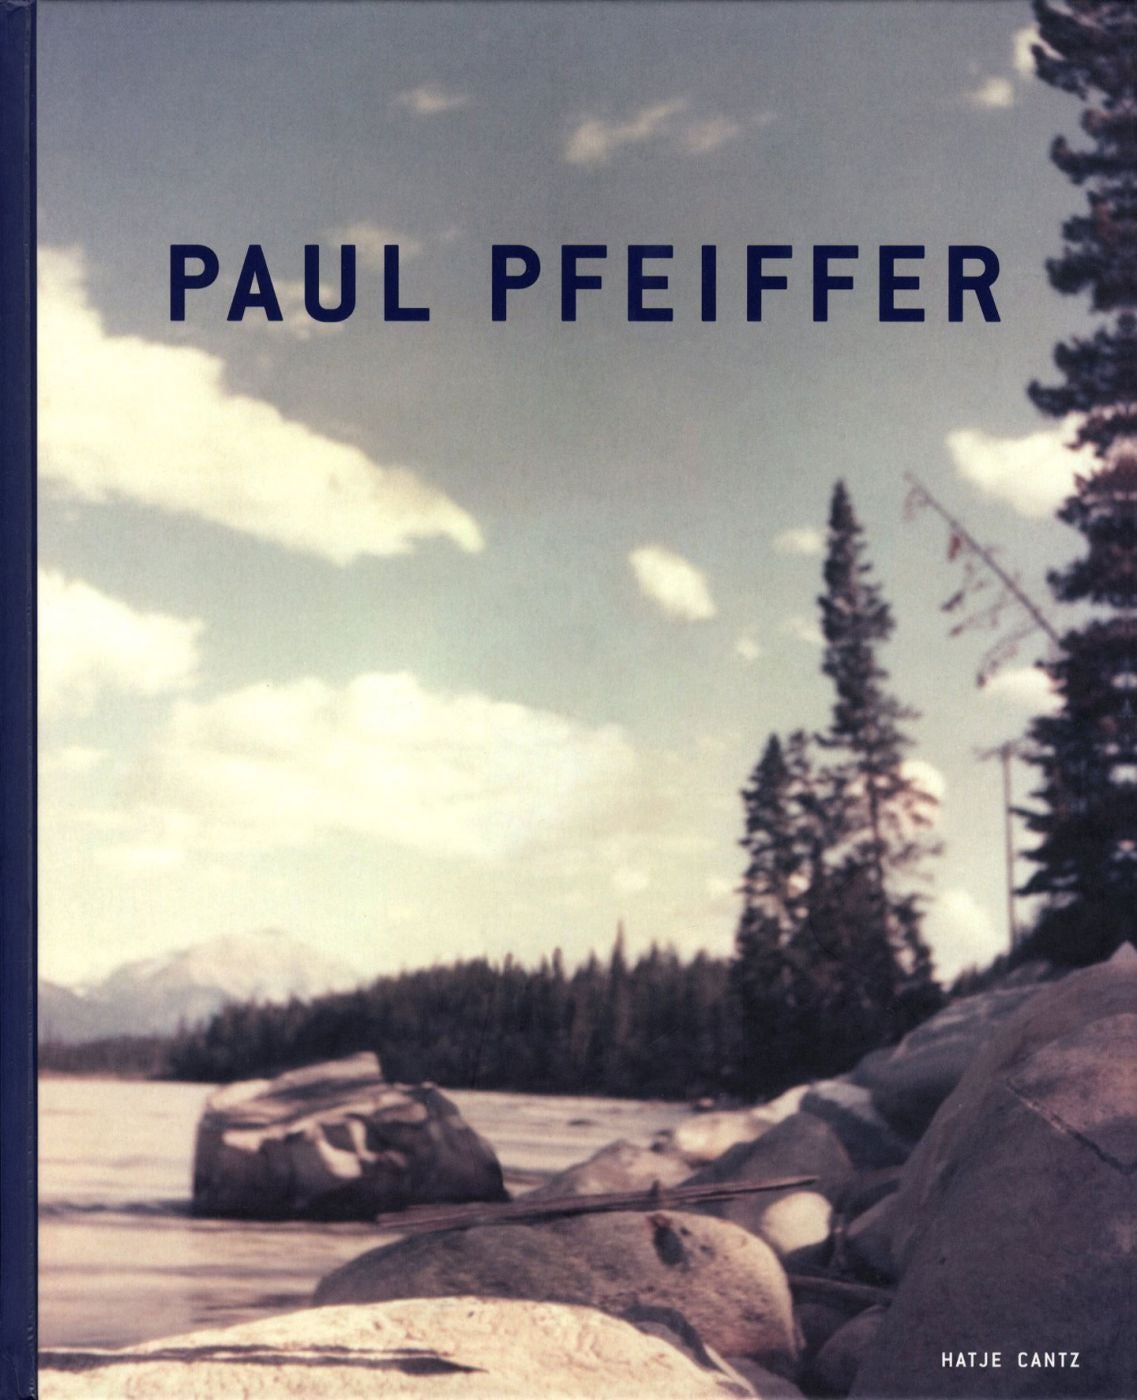 Paul Pfeiffer (Hatje Cantz)